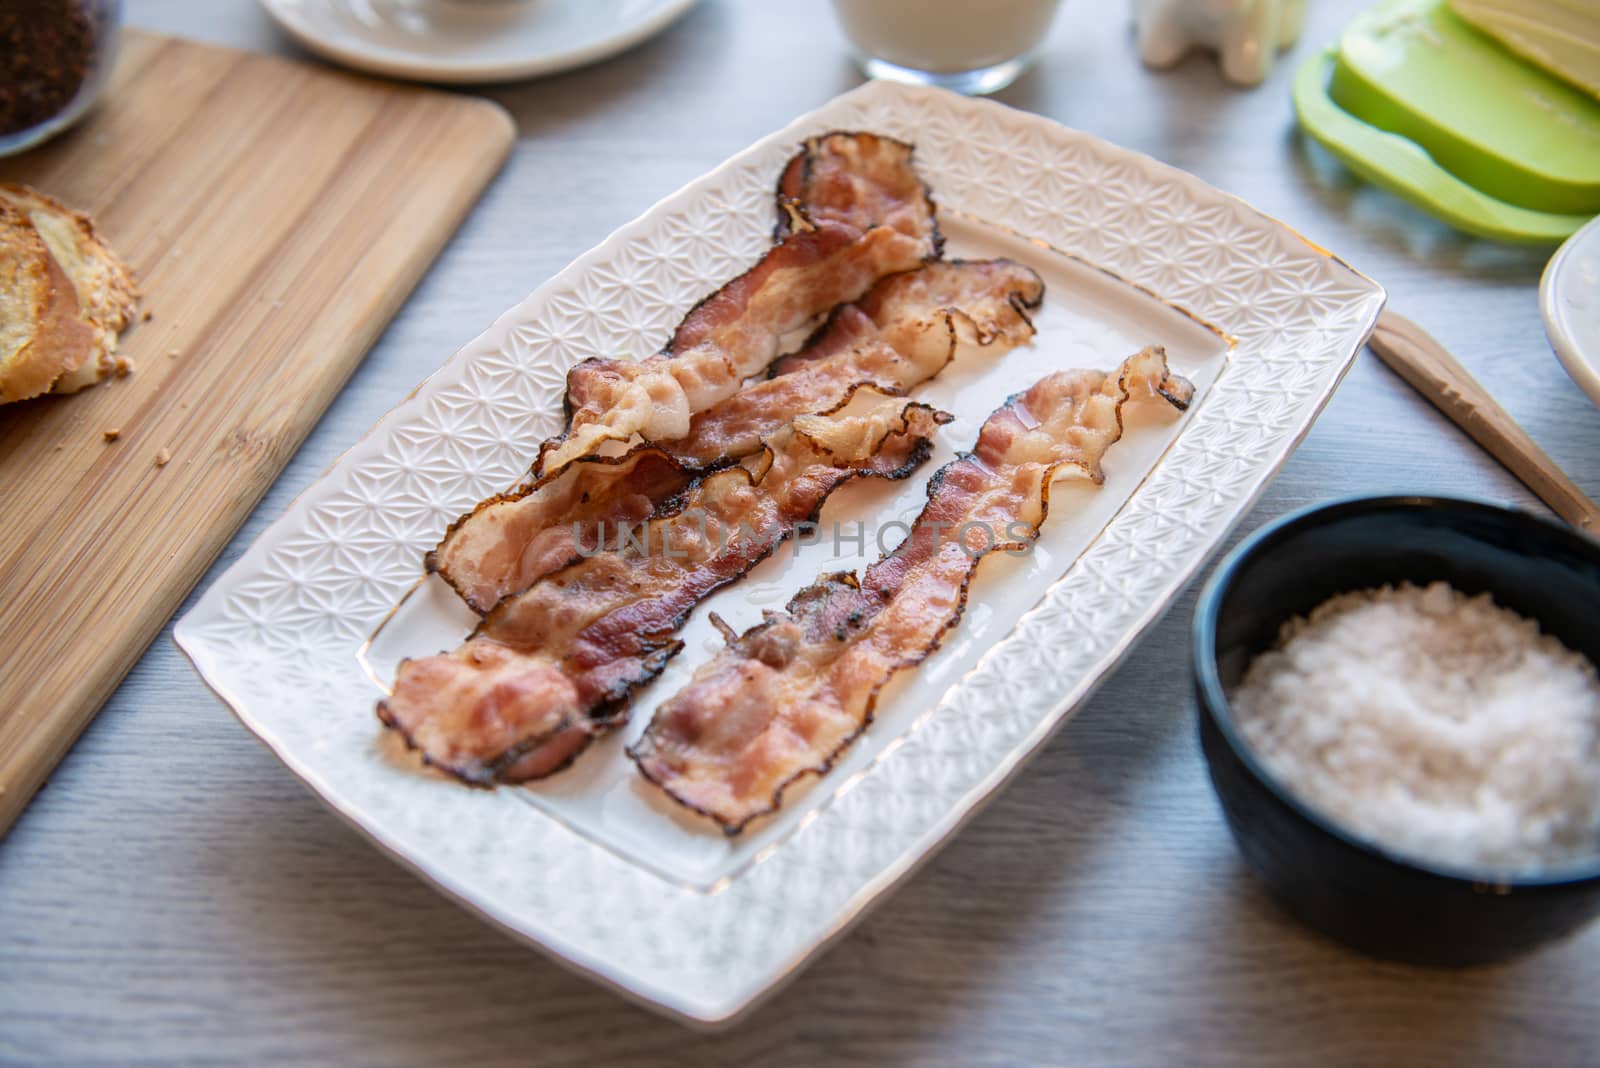 Fried bacon on white plate. Fat breakfast by marynkin